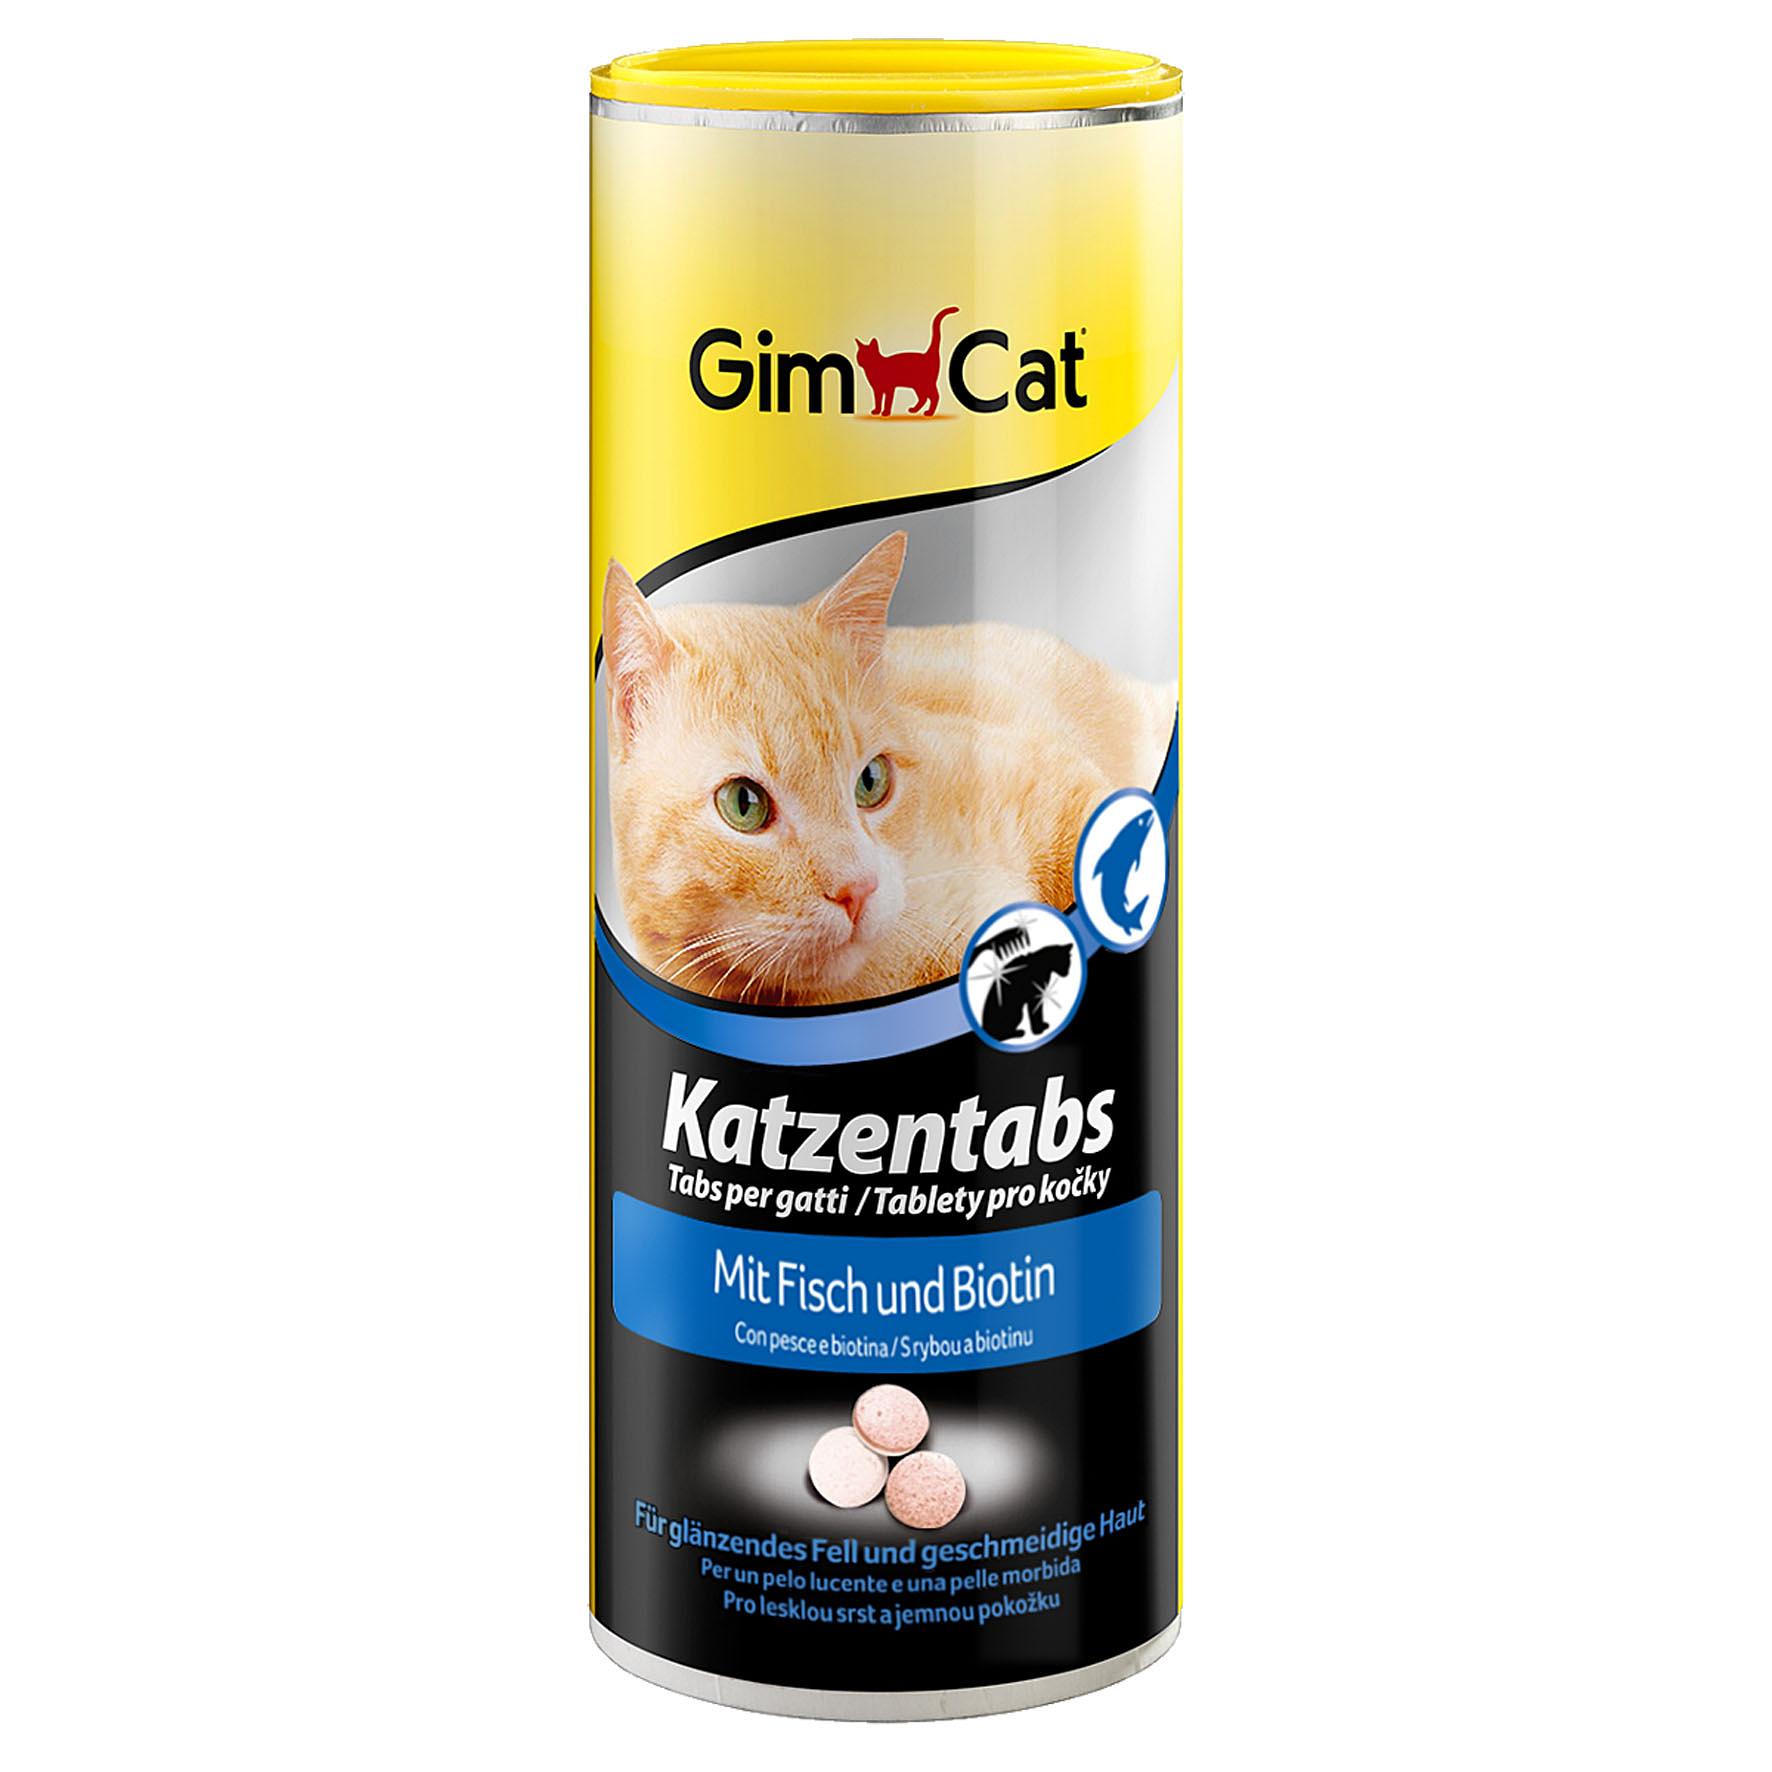 GimCat tabs pour chats au poisson